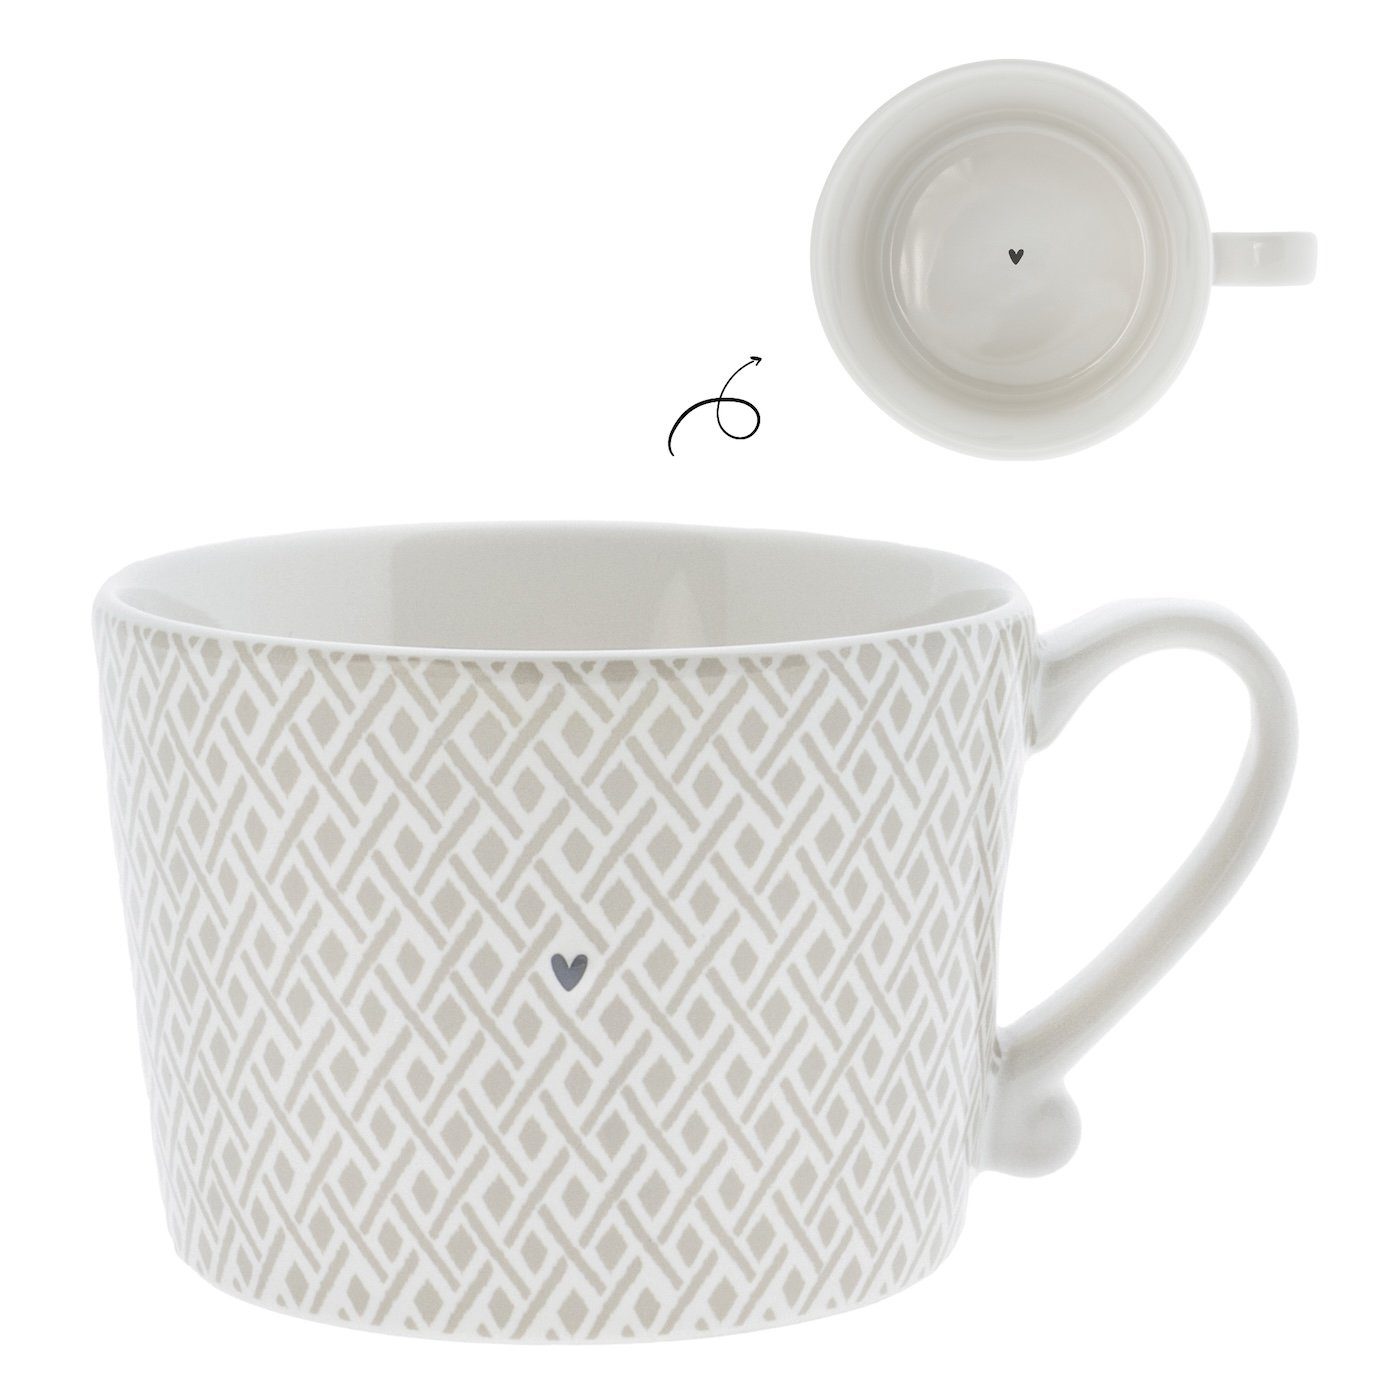 Collections Check Tasse mit handbemalt (RJ/CUP Tasse weiß Keramik BT), Henkel Bastion Keramik, Little titane 112